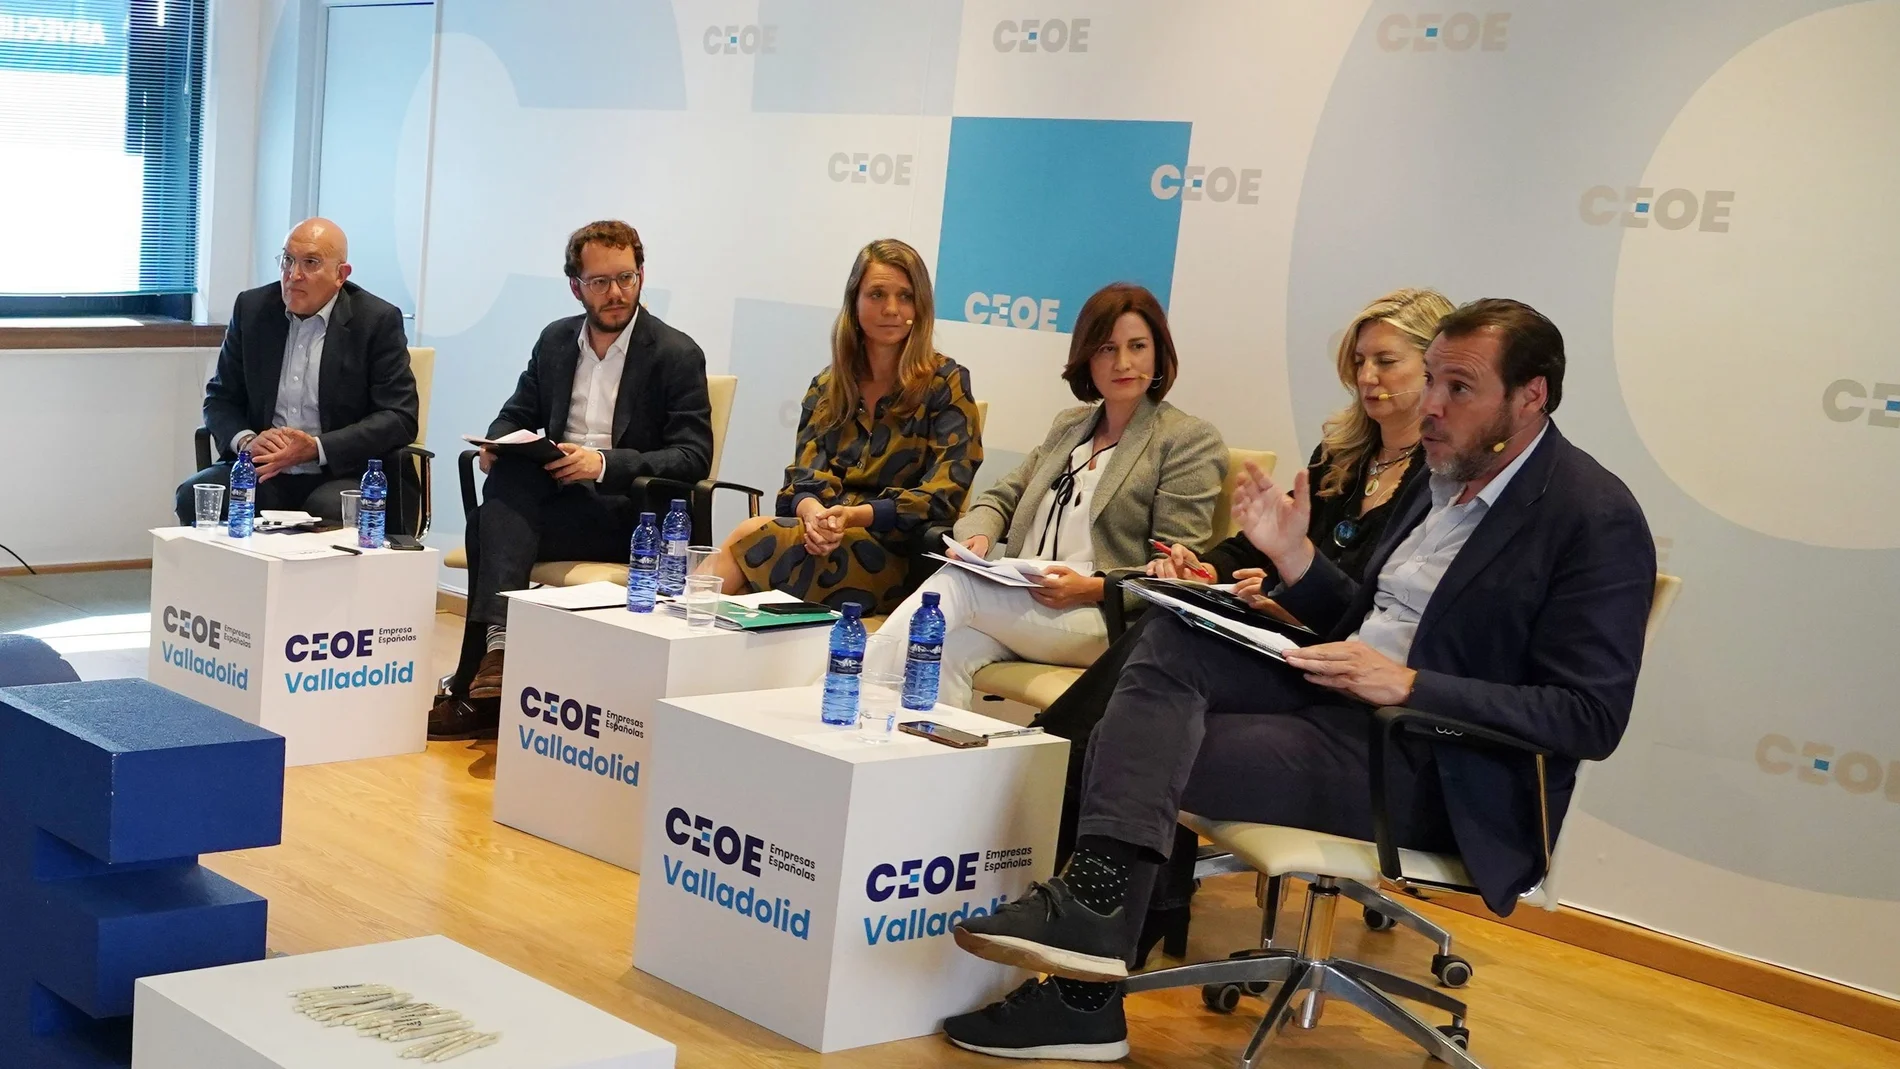 Debate de los candidatos a la alcaldía de Valladolid organizado recientemente por la CEOE